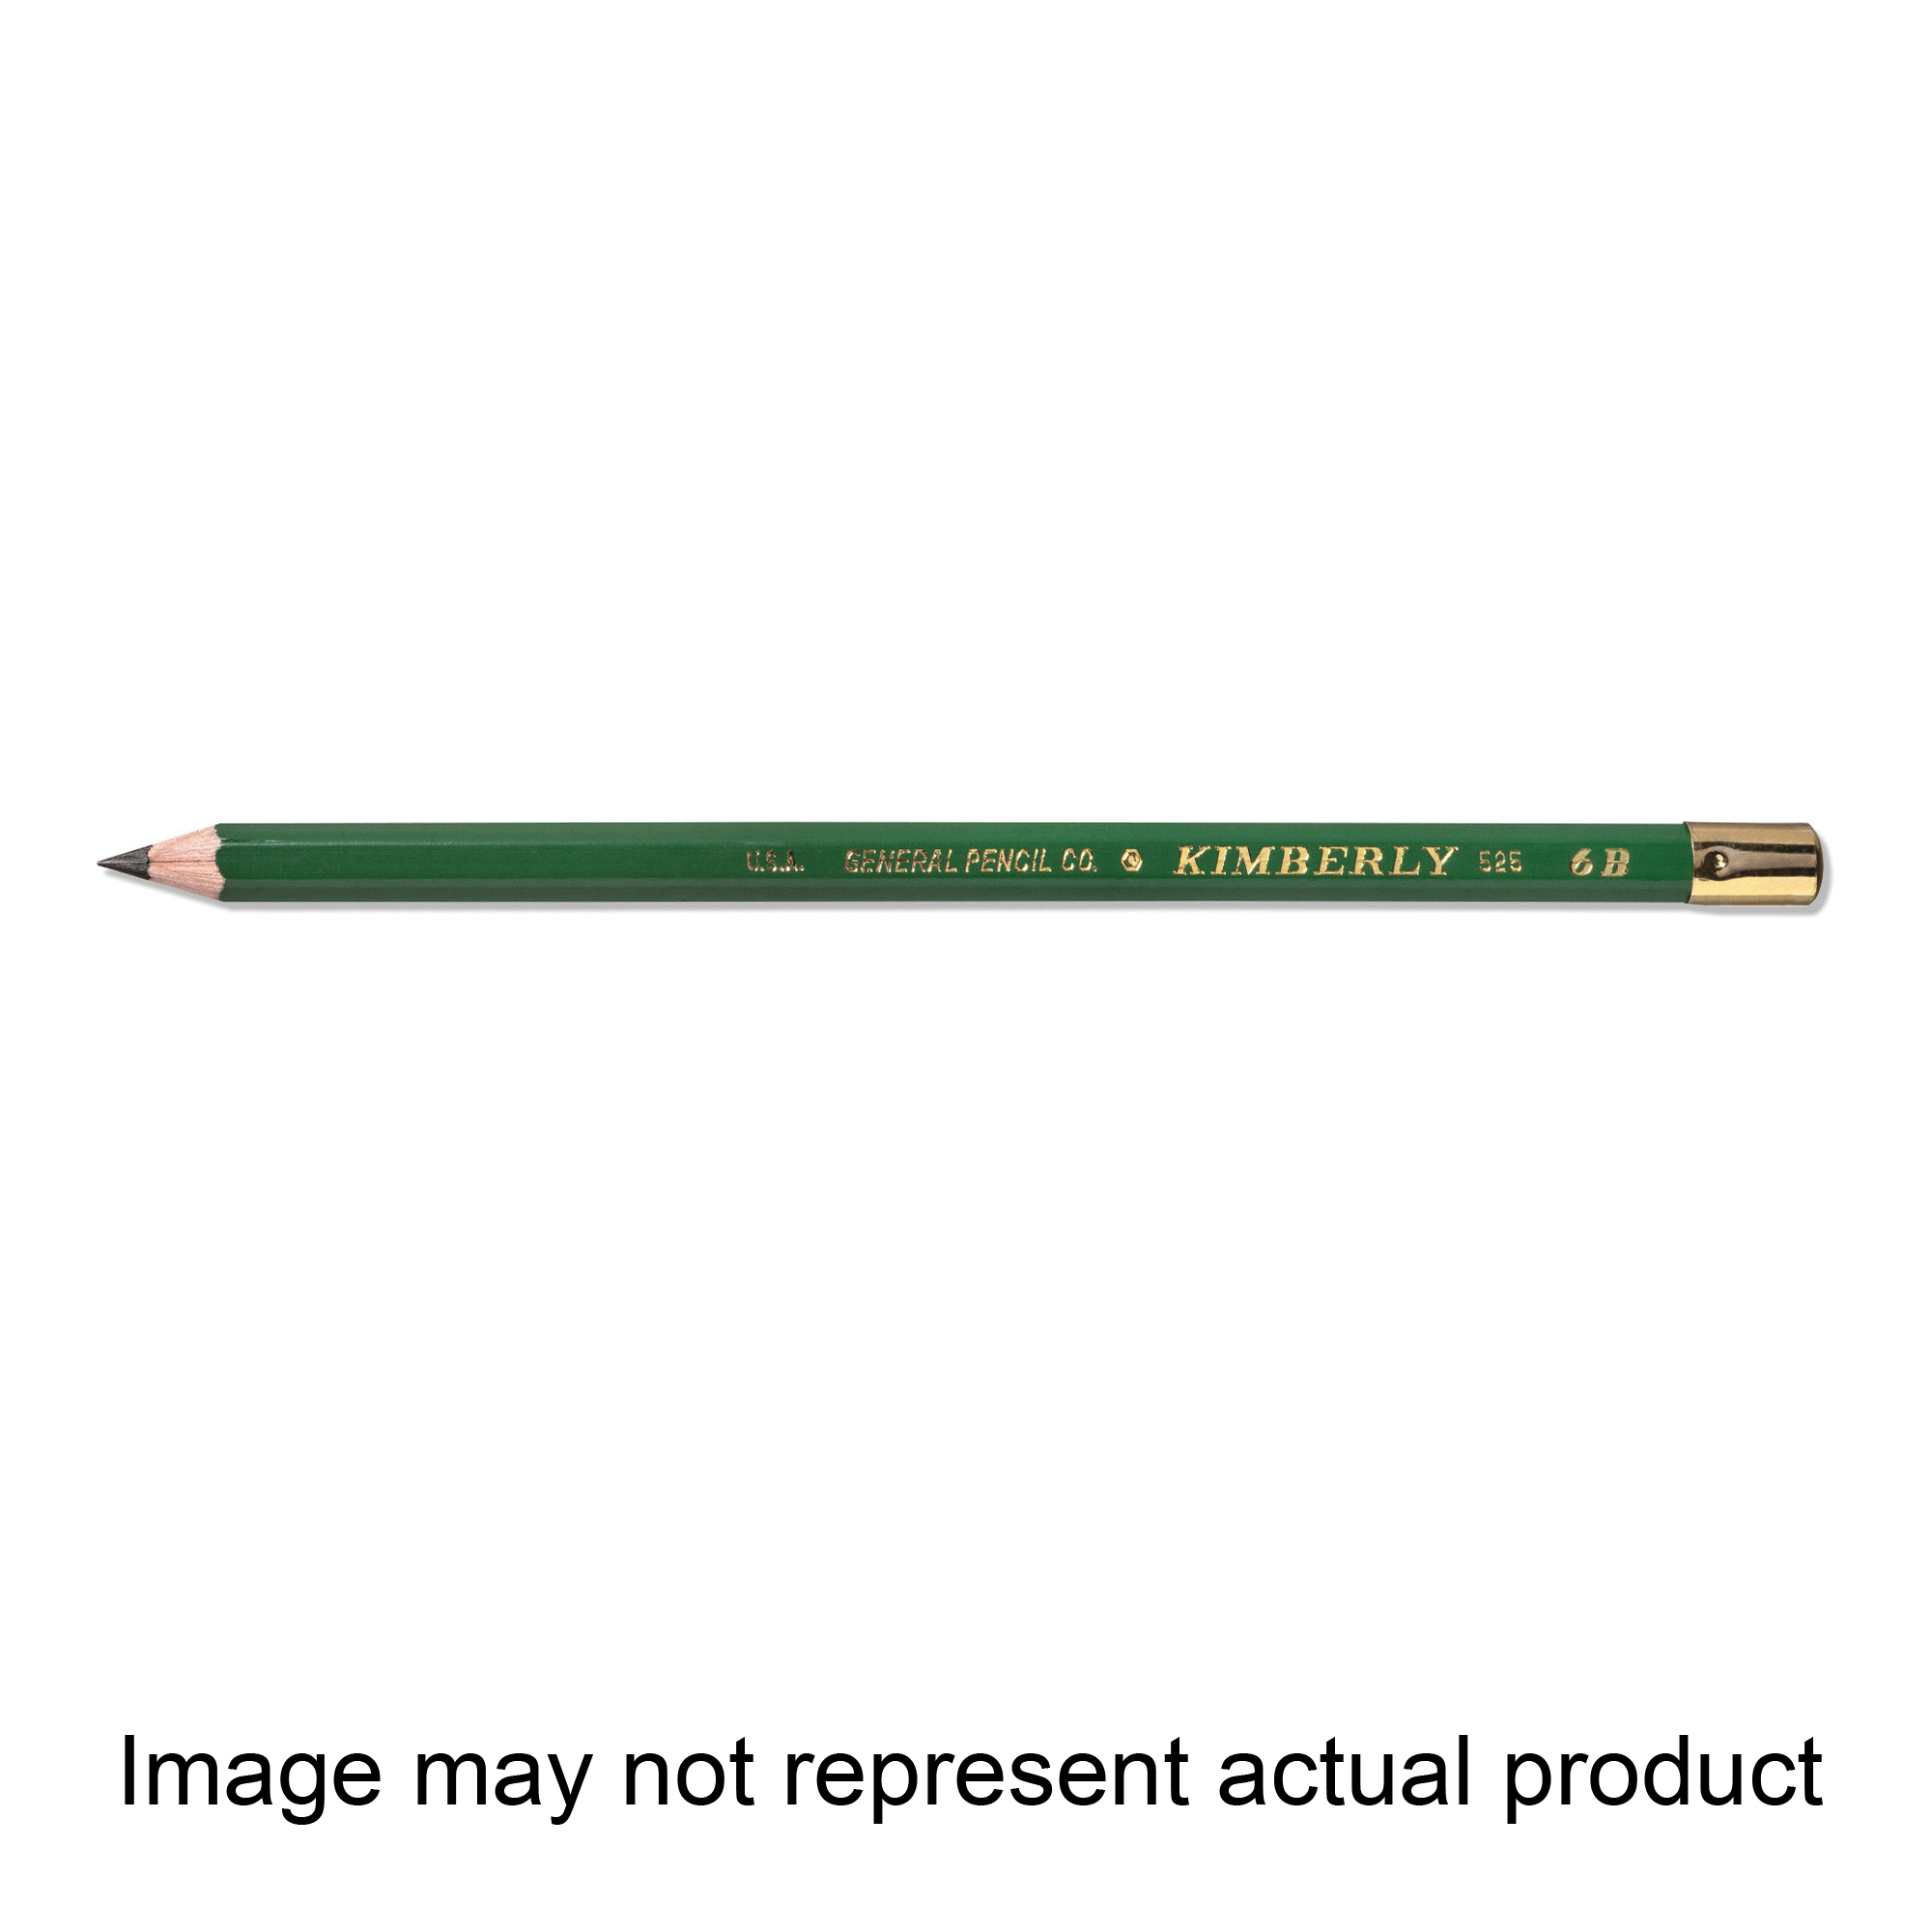 General Pencil Company 525-HB